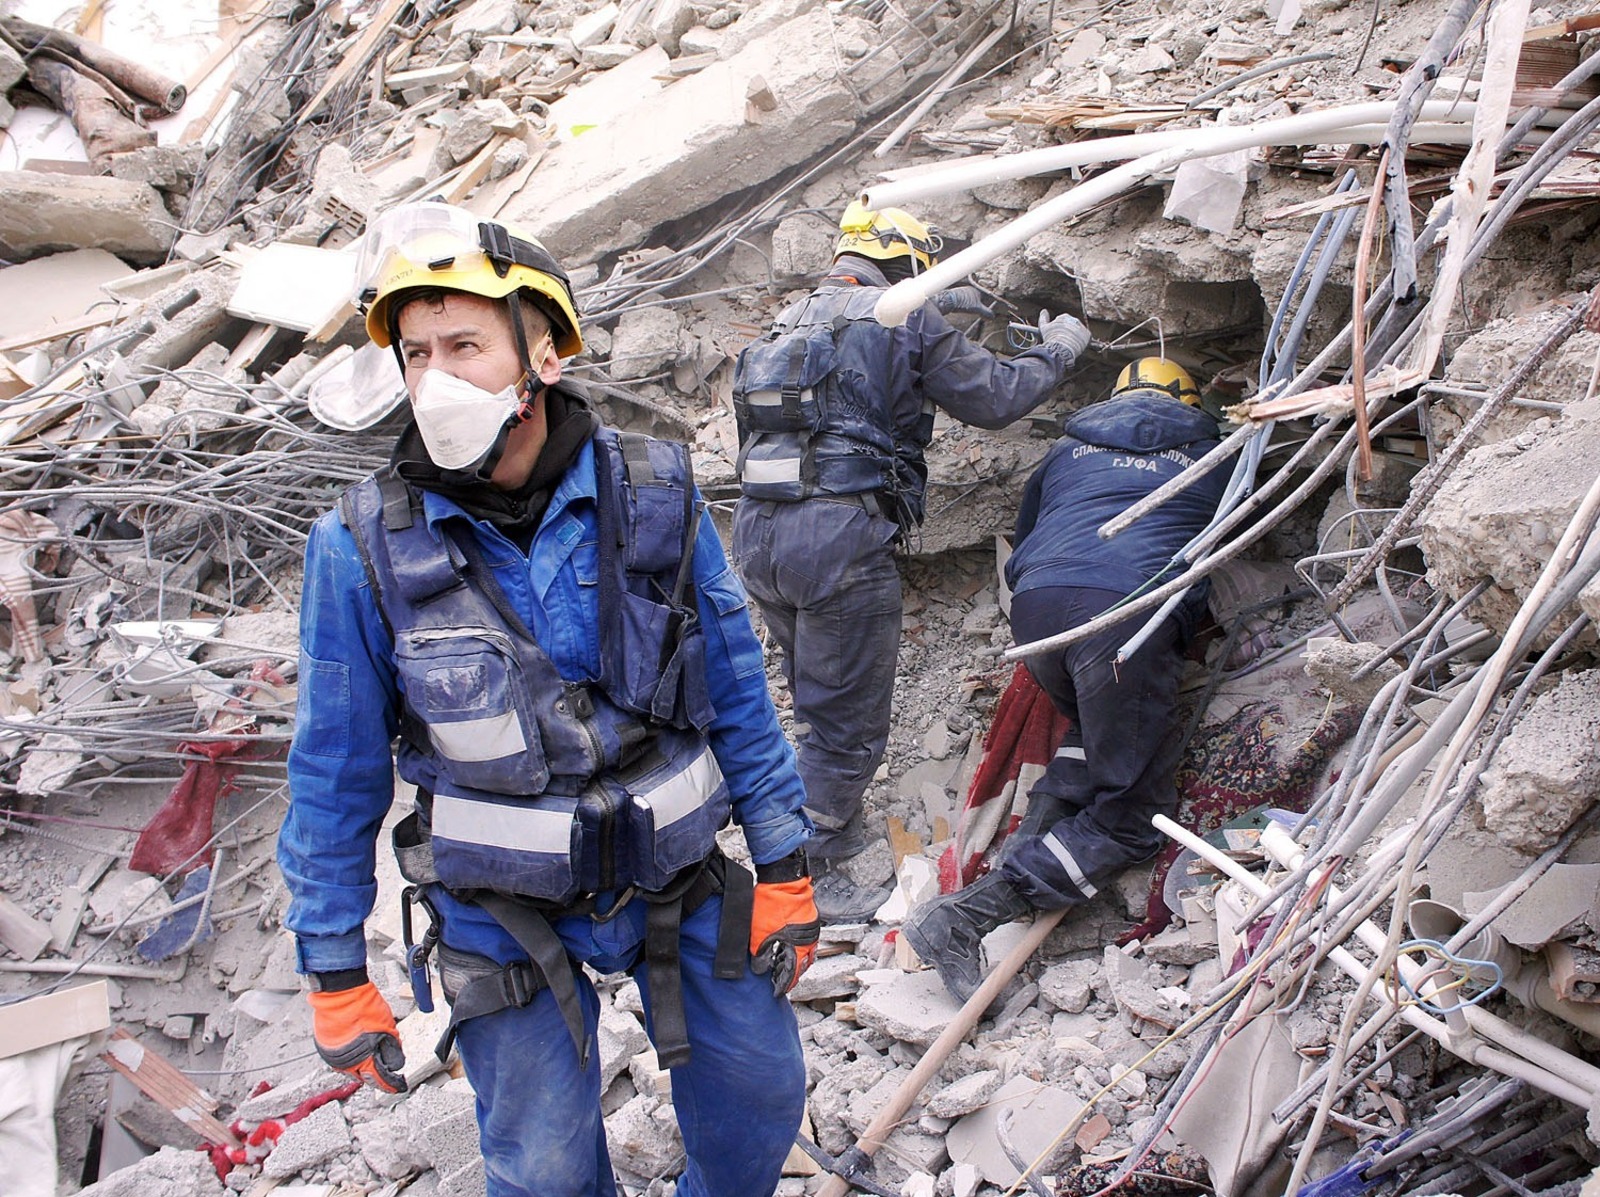 из архива поисково-спасательного отряда Управления гражданской защиты Уфы 14 человек из поисково-спасательного отряда работали на завалах после землетрясения в Турции.